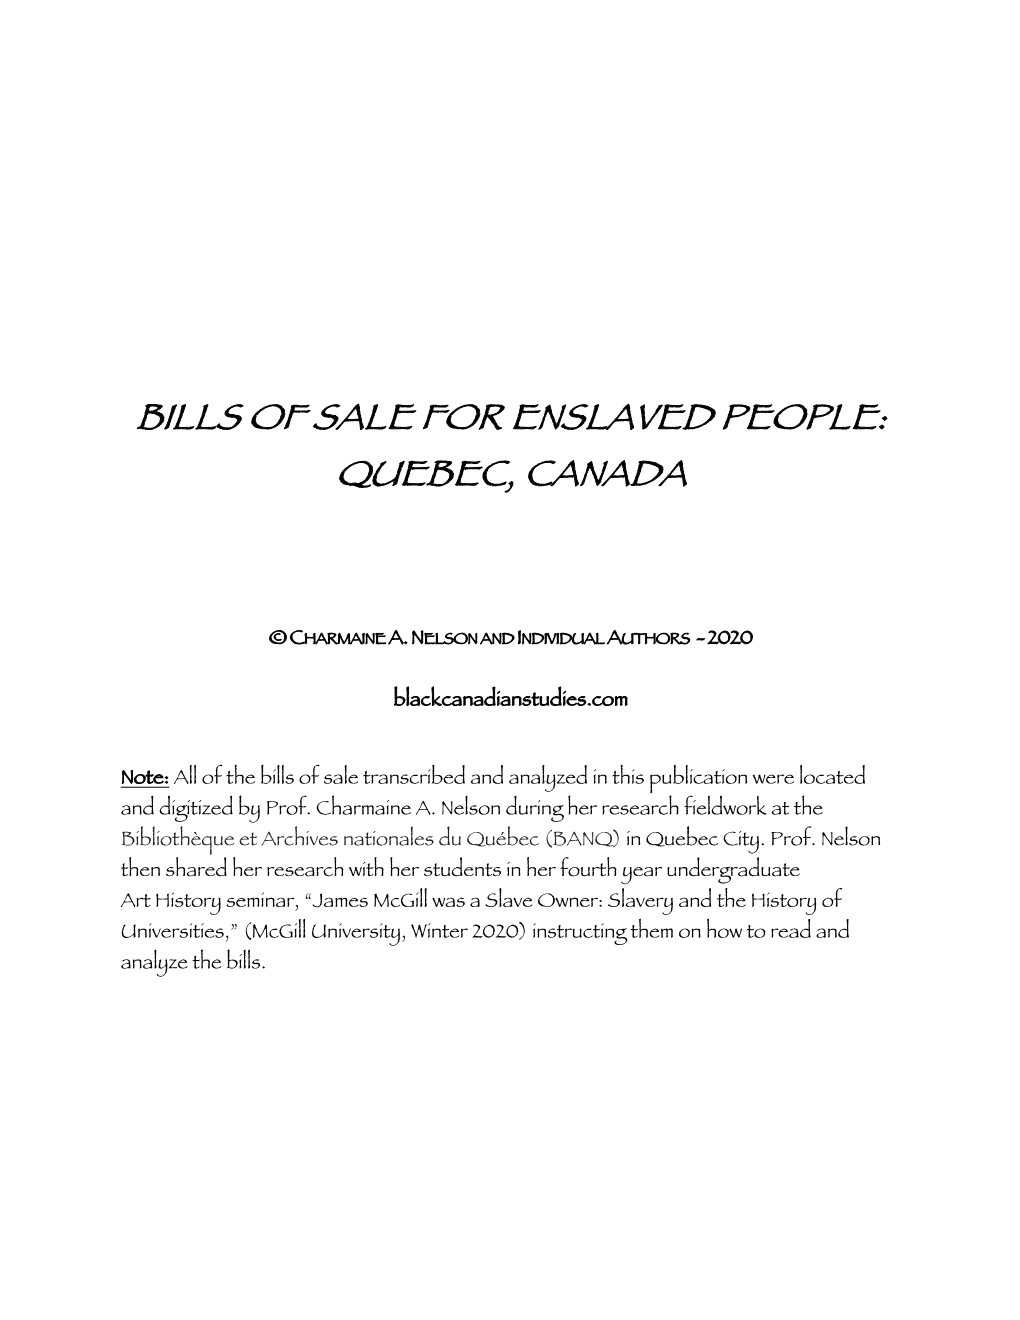 Bills of Sale for Enslaved People: Quebec, Canada